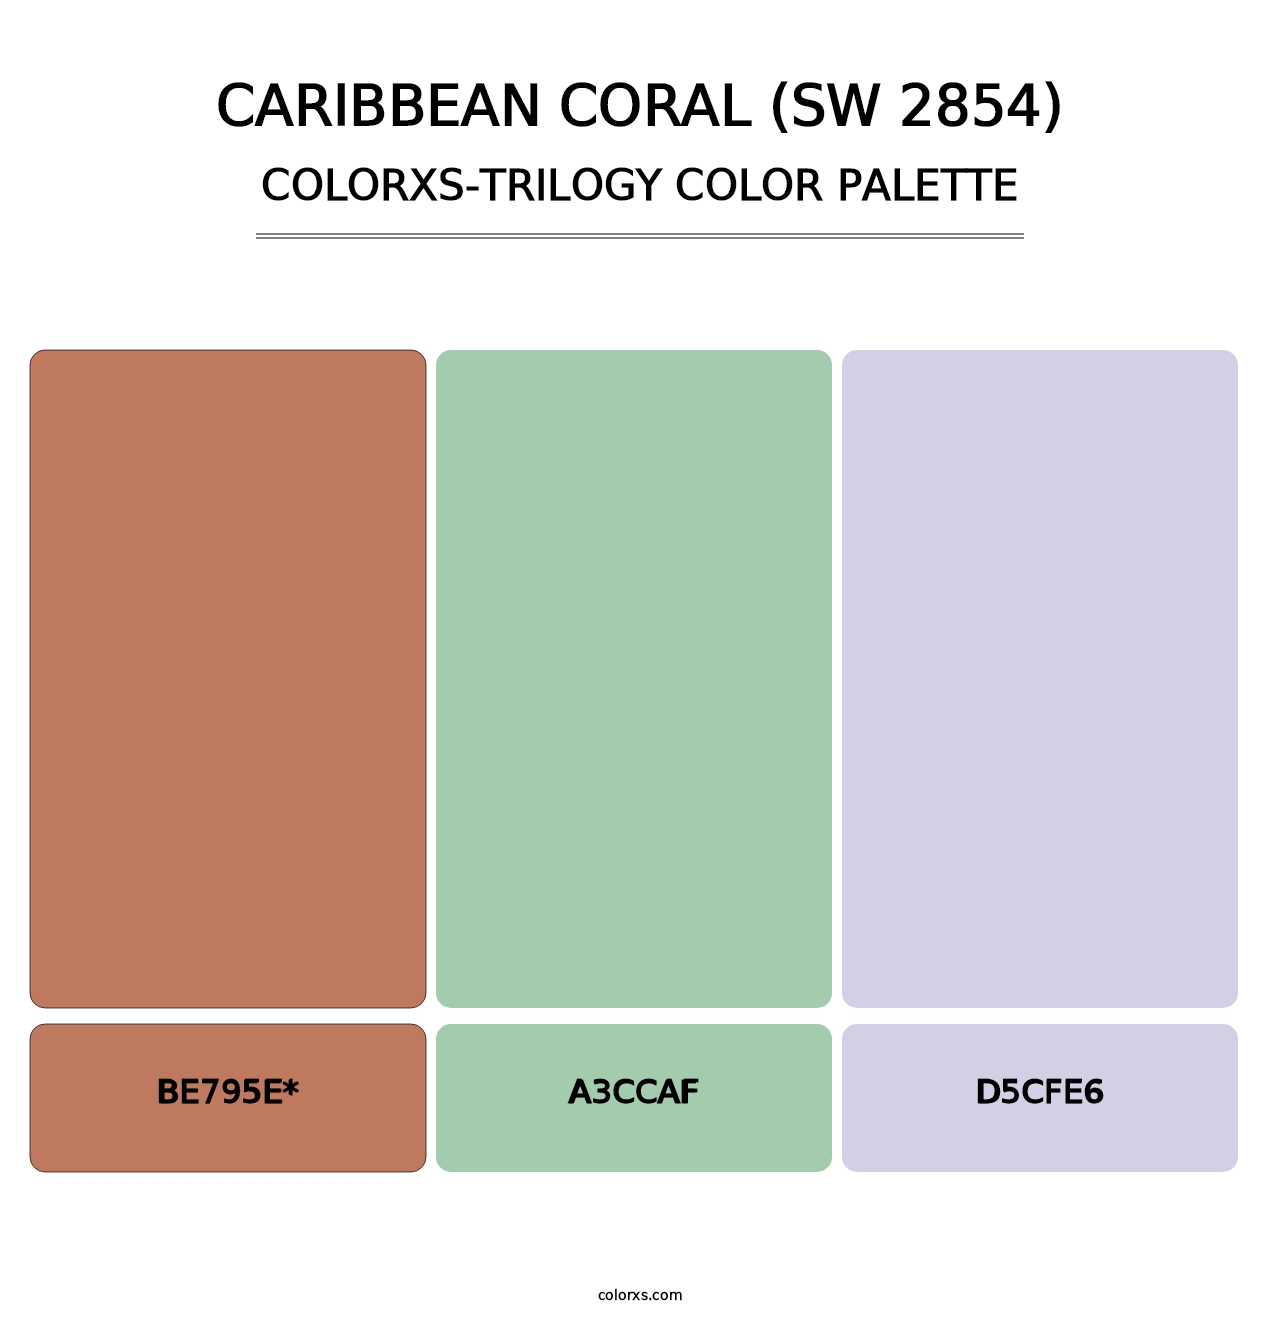 Caribbean Coral (SW 2854) - Colorxs Trilogy Palette